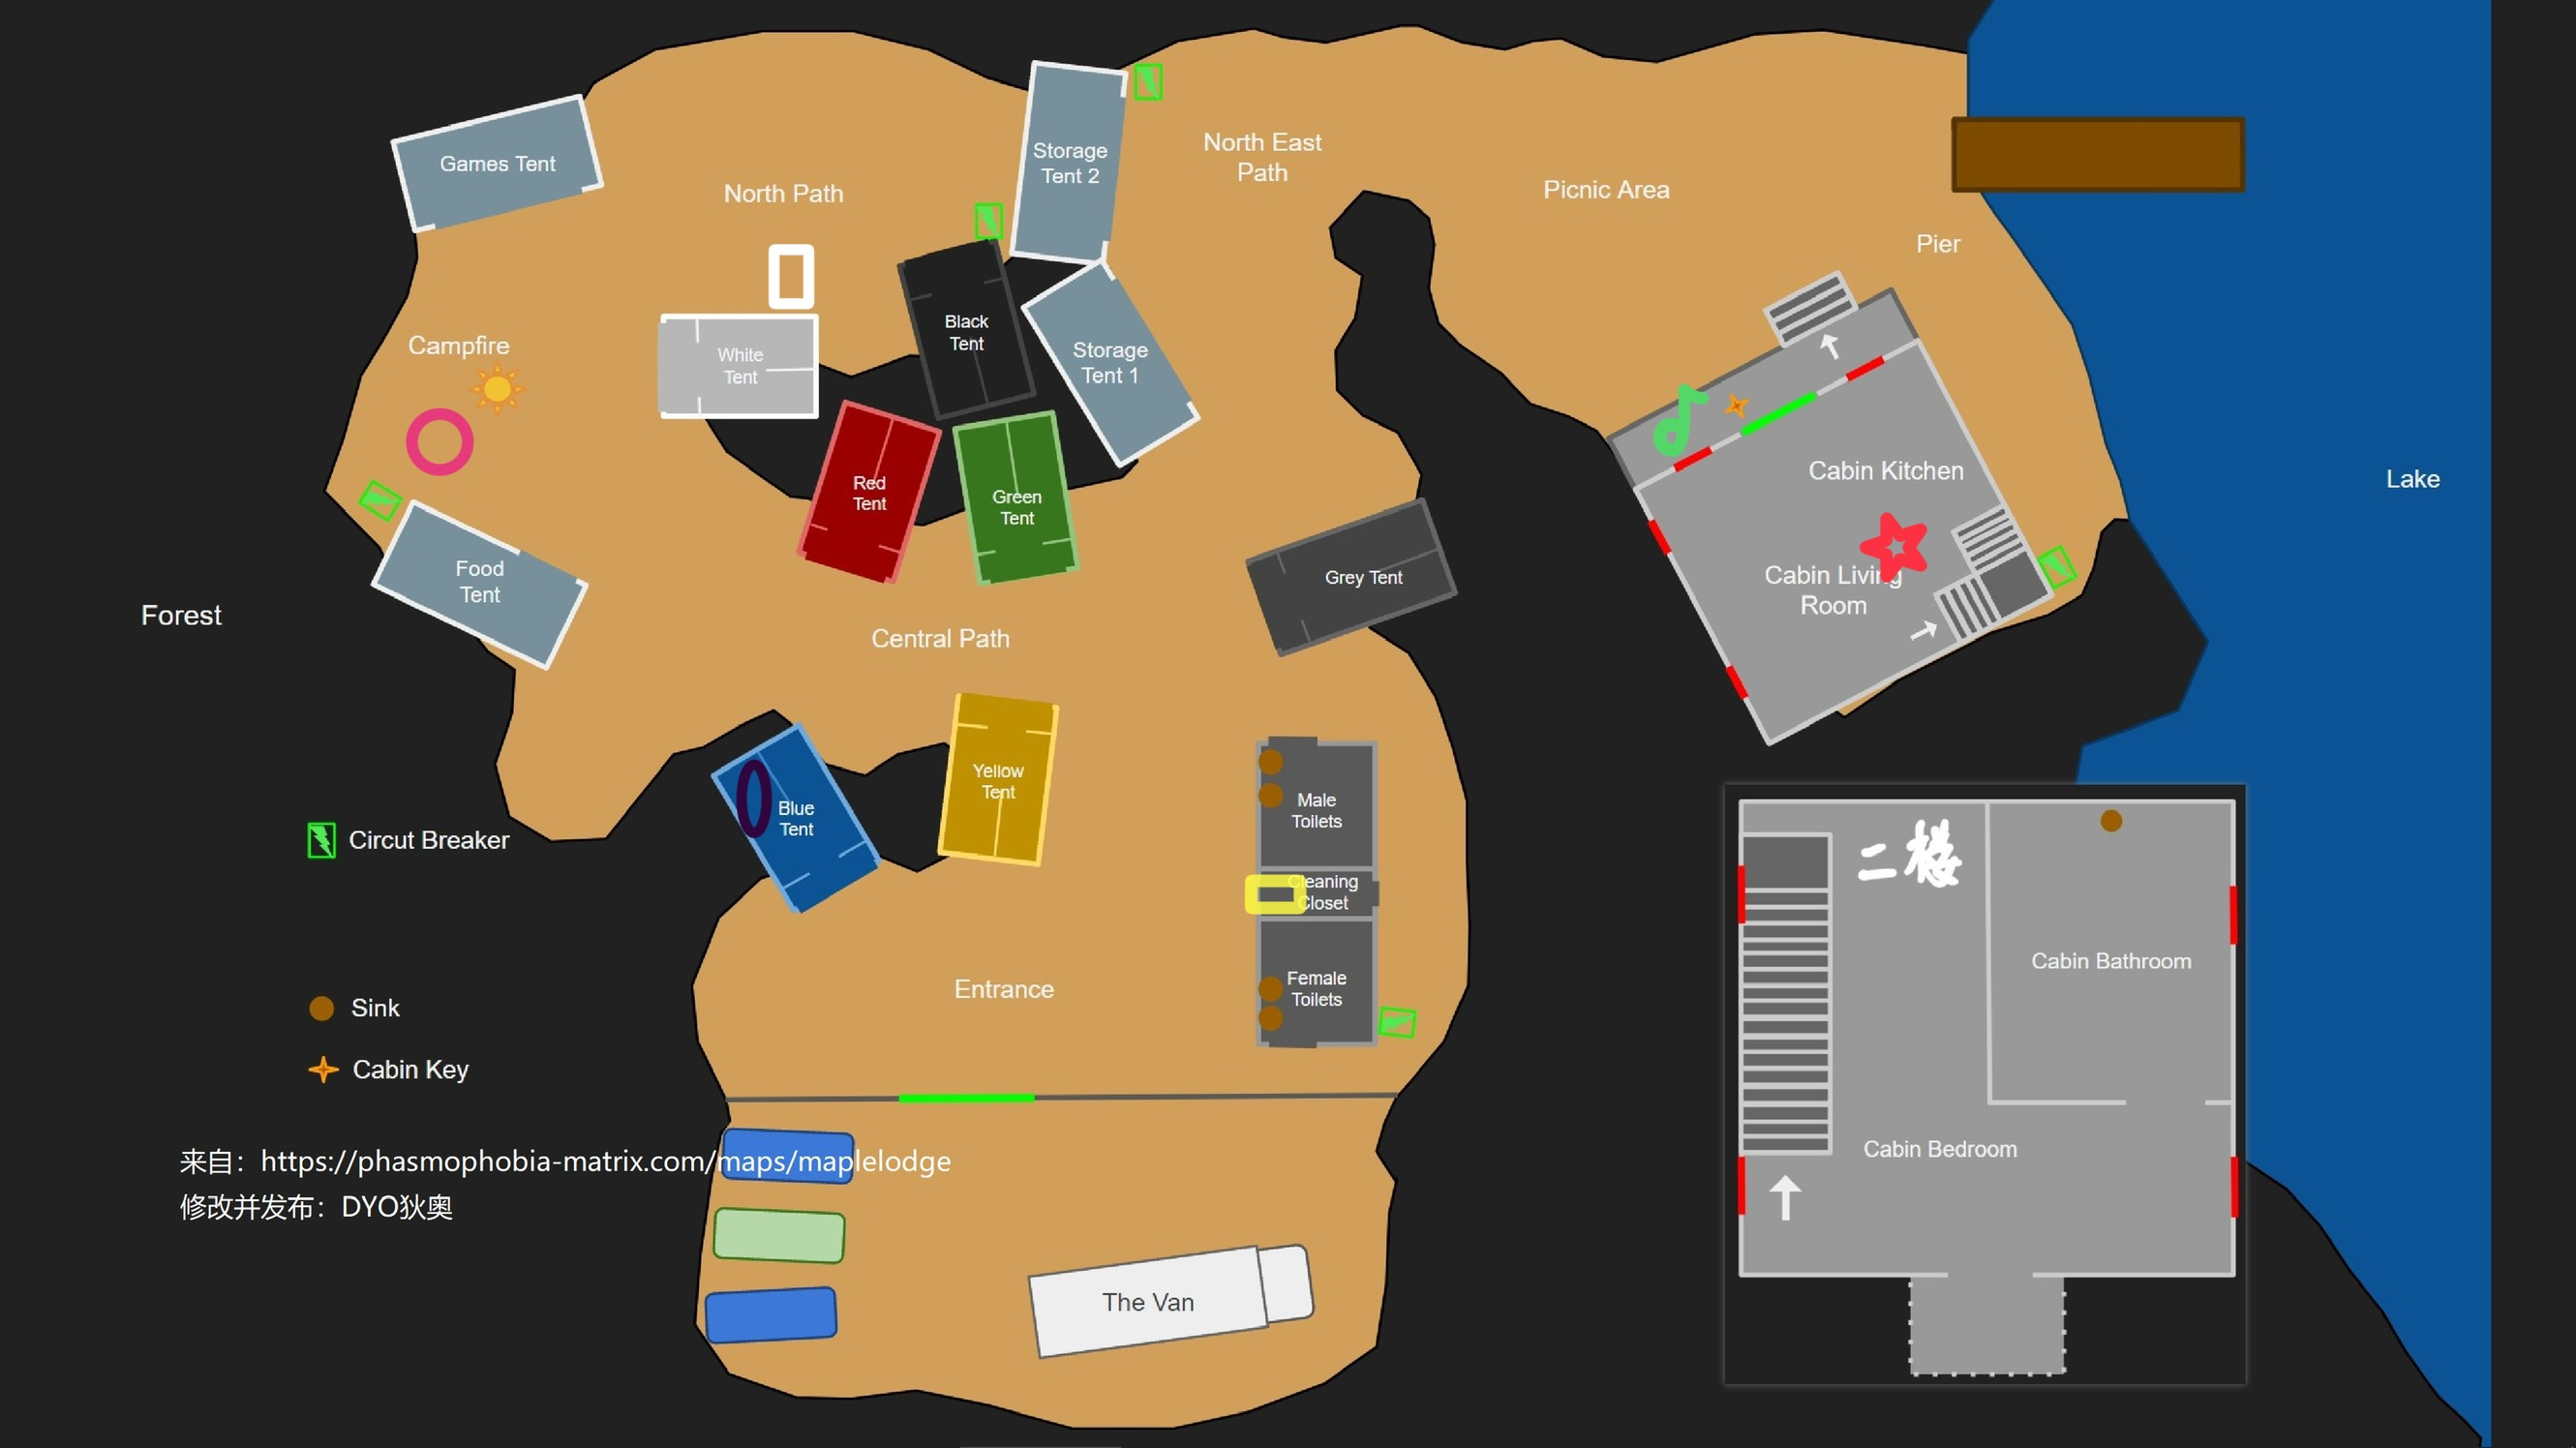  《恐鬼症》游戏地图分布详细分析